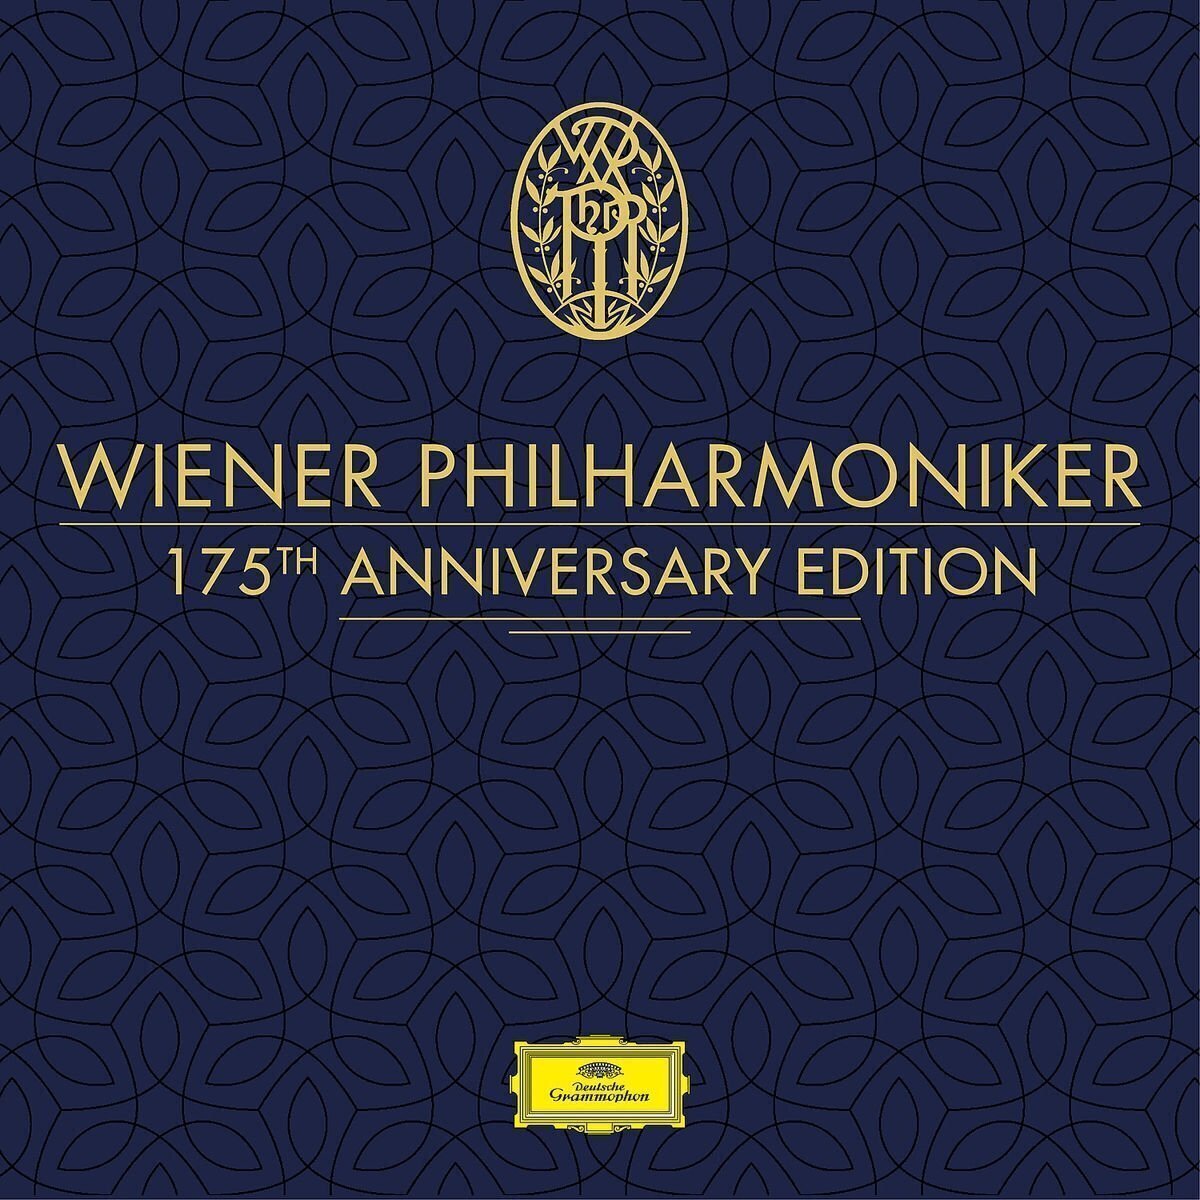 Wiener Philharmoniker - Wiener Philharmoniker 175th Annivers (Box Set) Wiener Philharmoniker